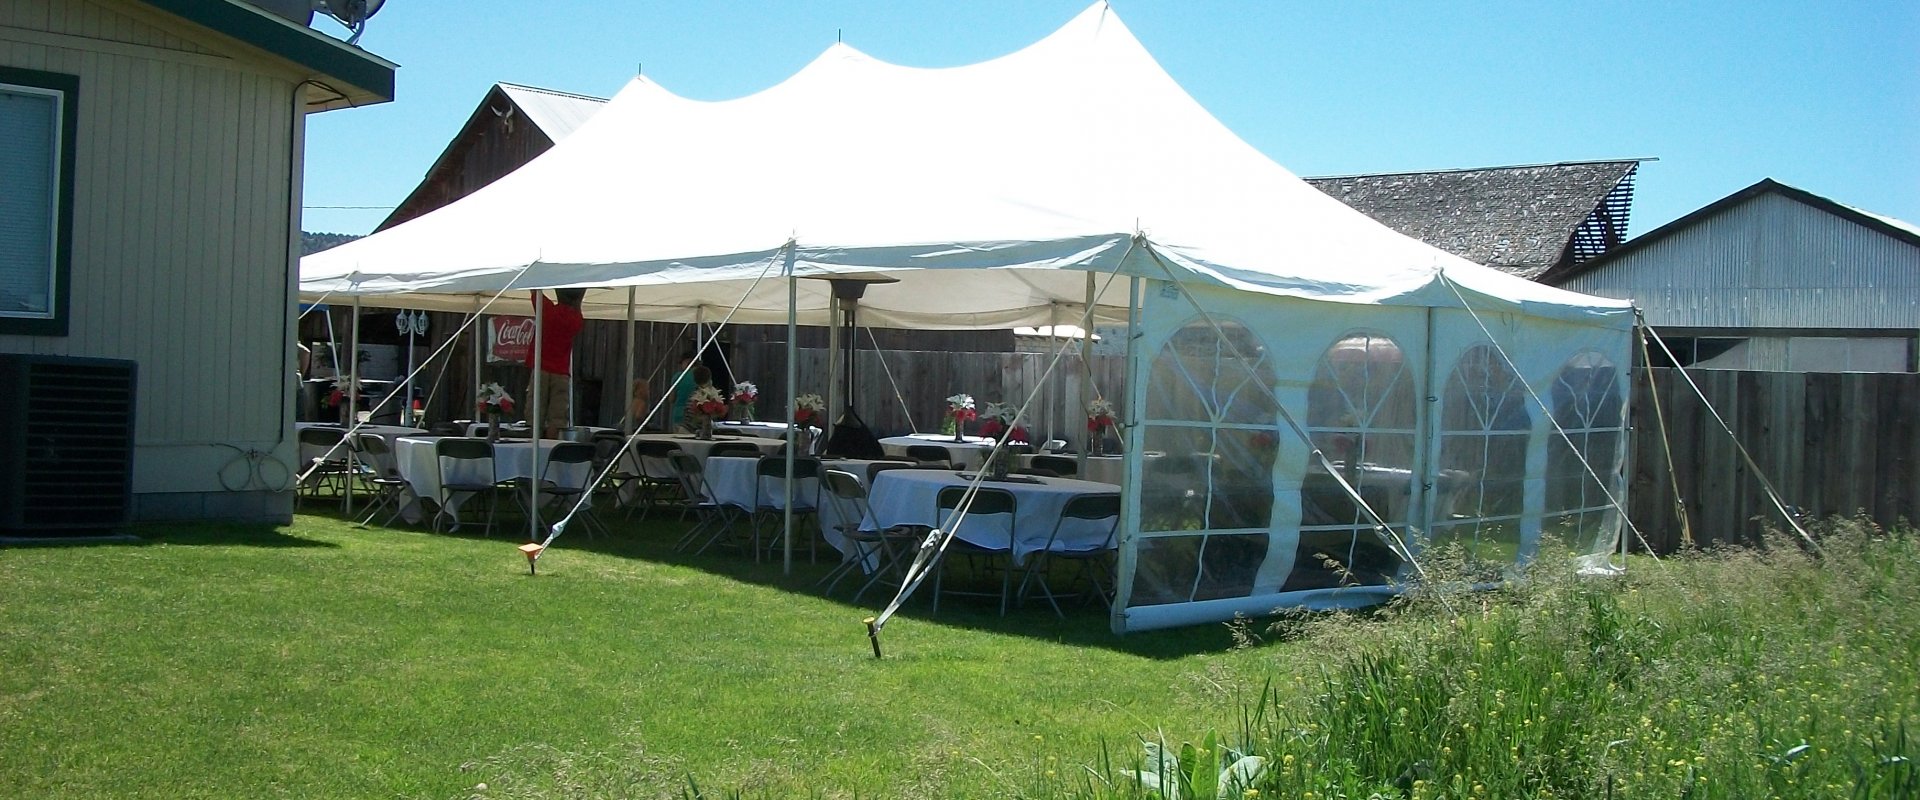 klamath falls event party tent rentals